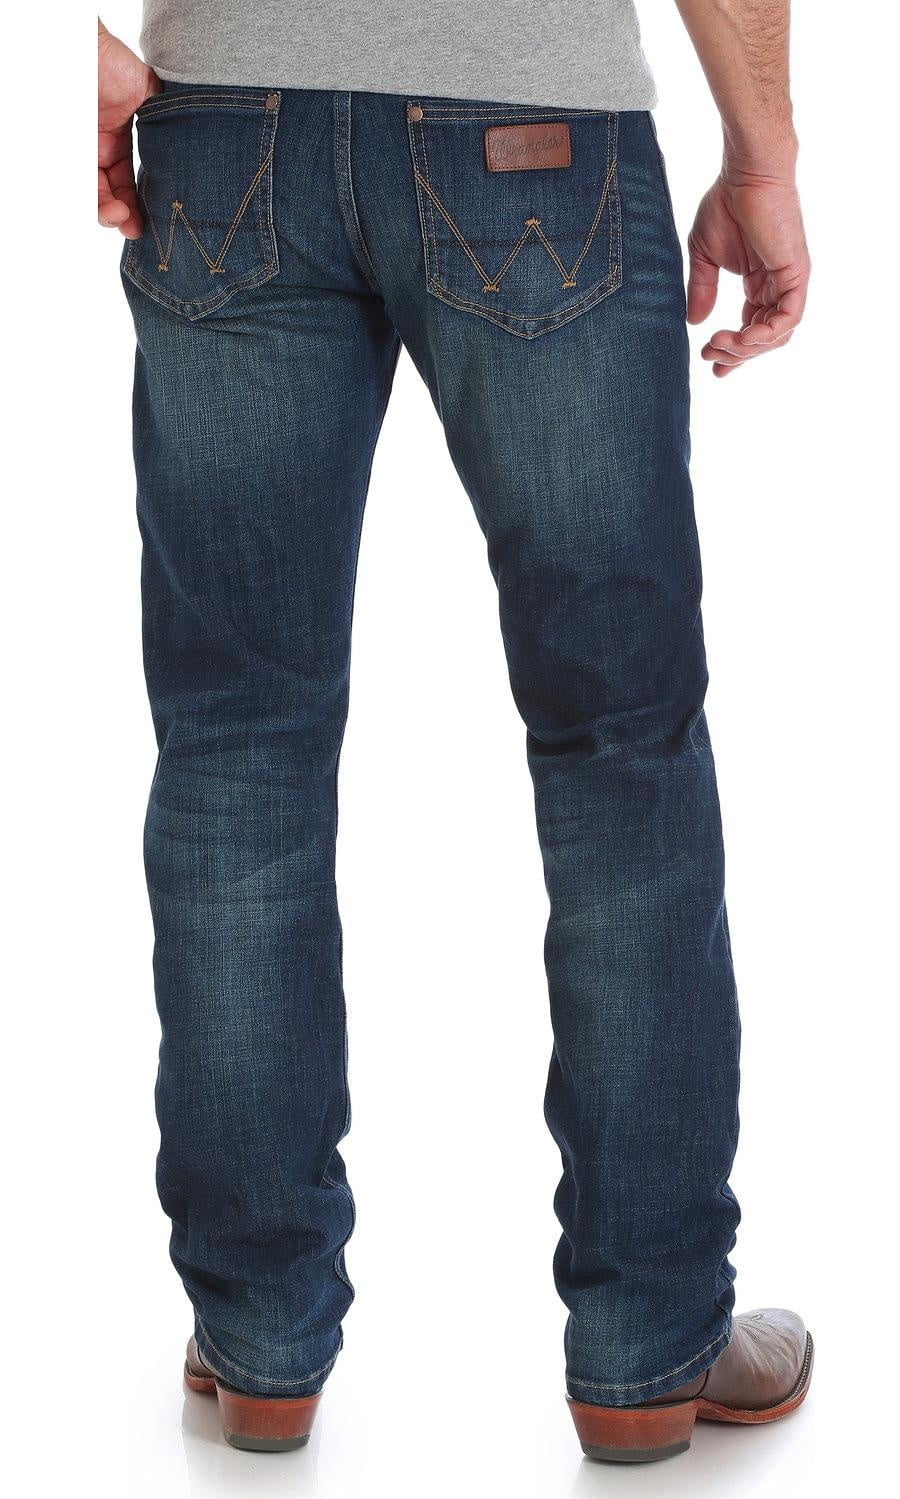 primark ankle grazer jeans